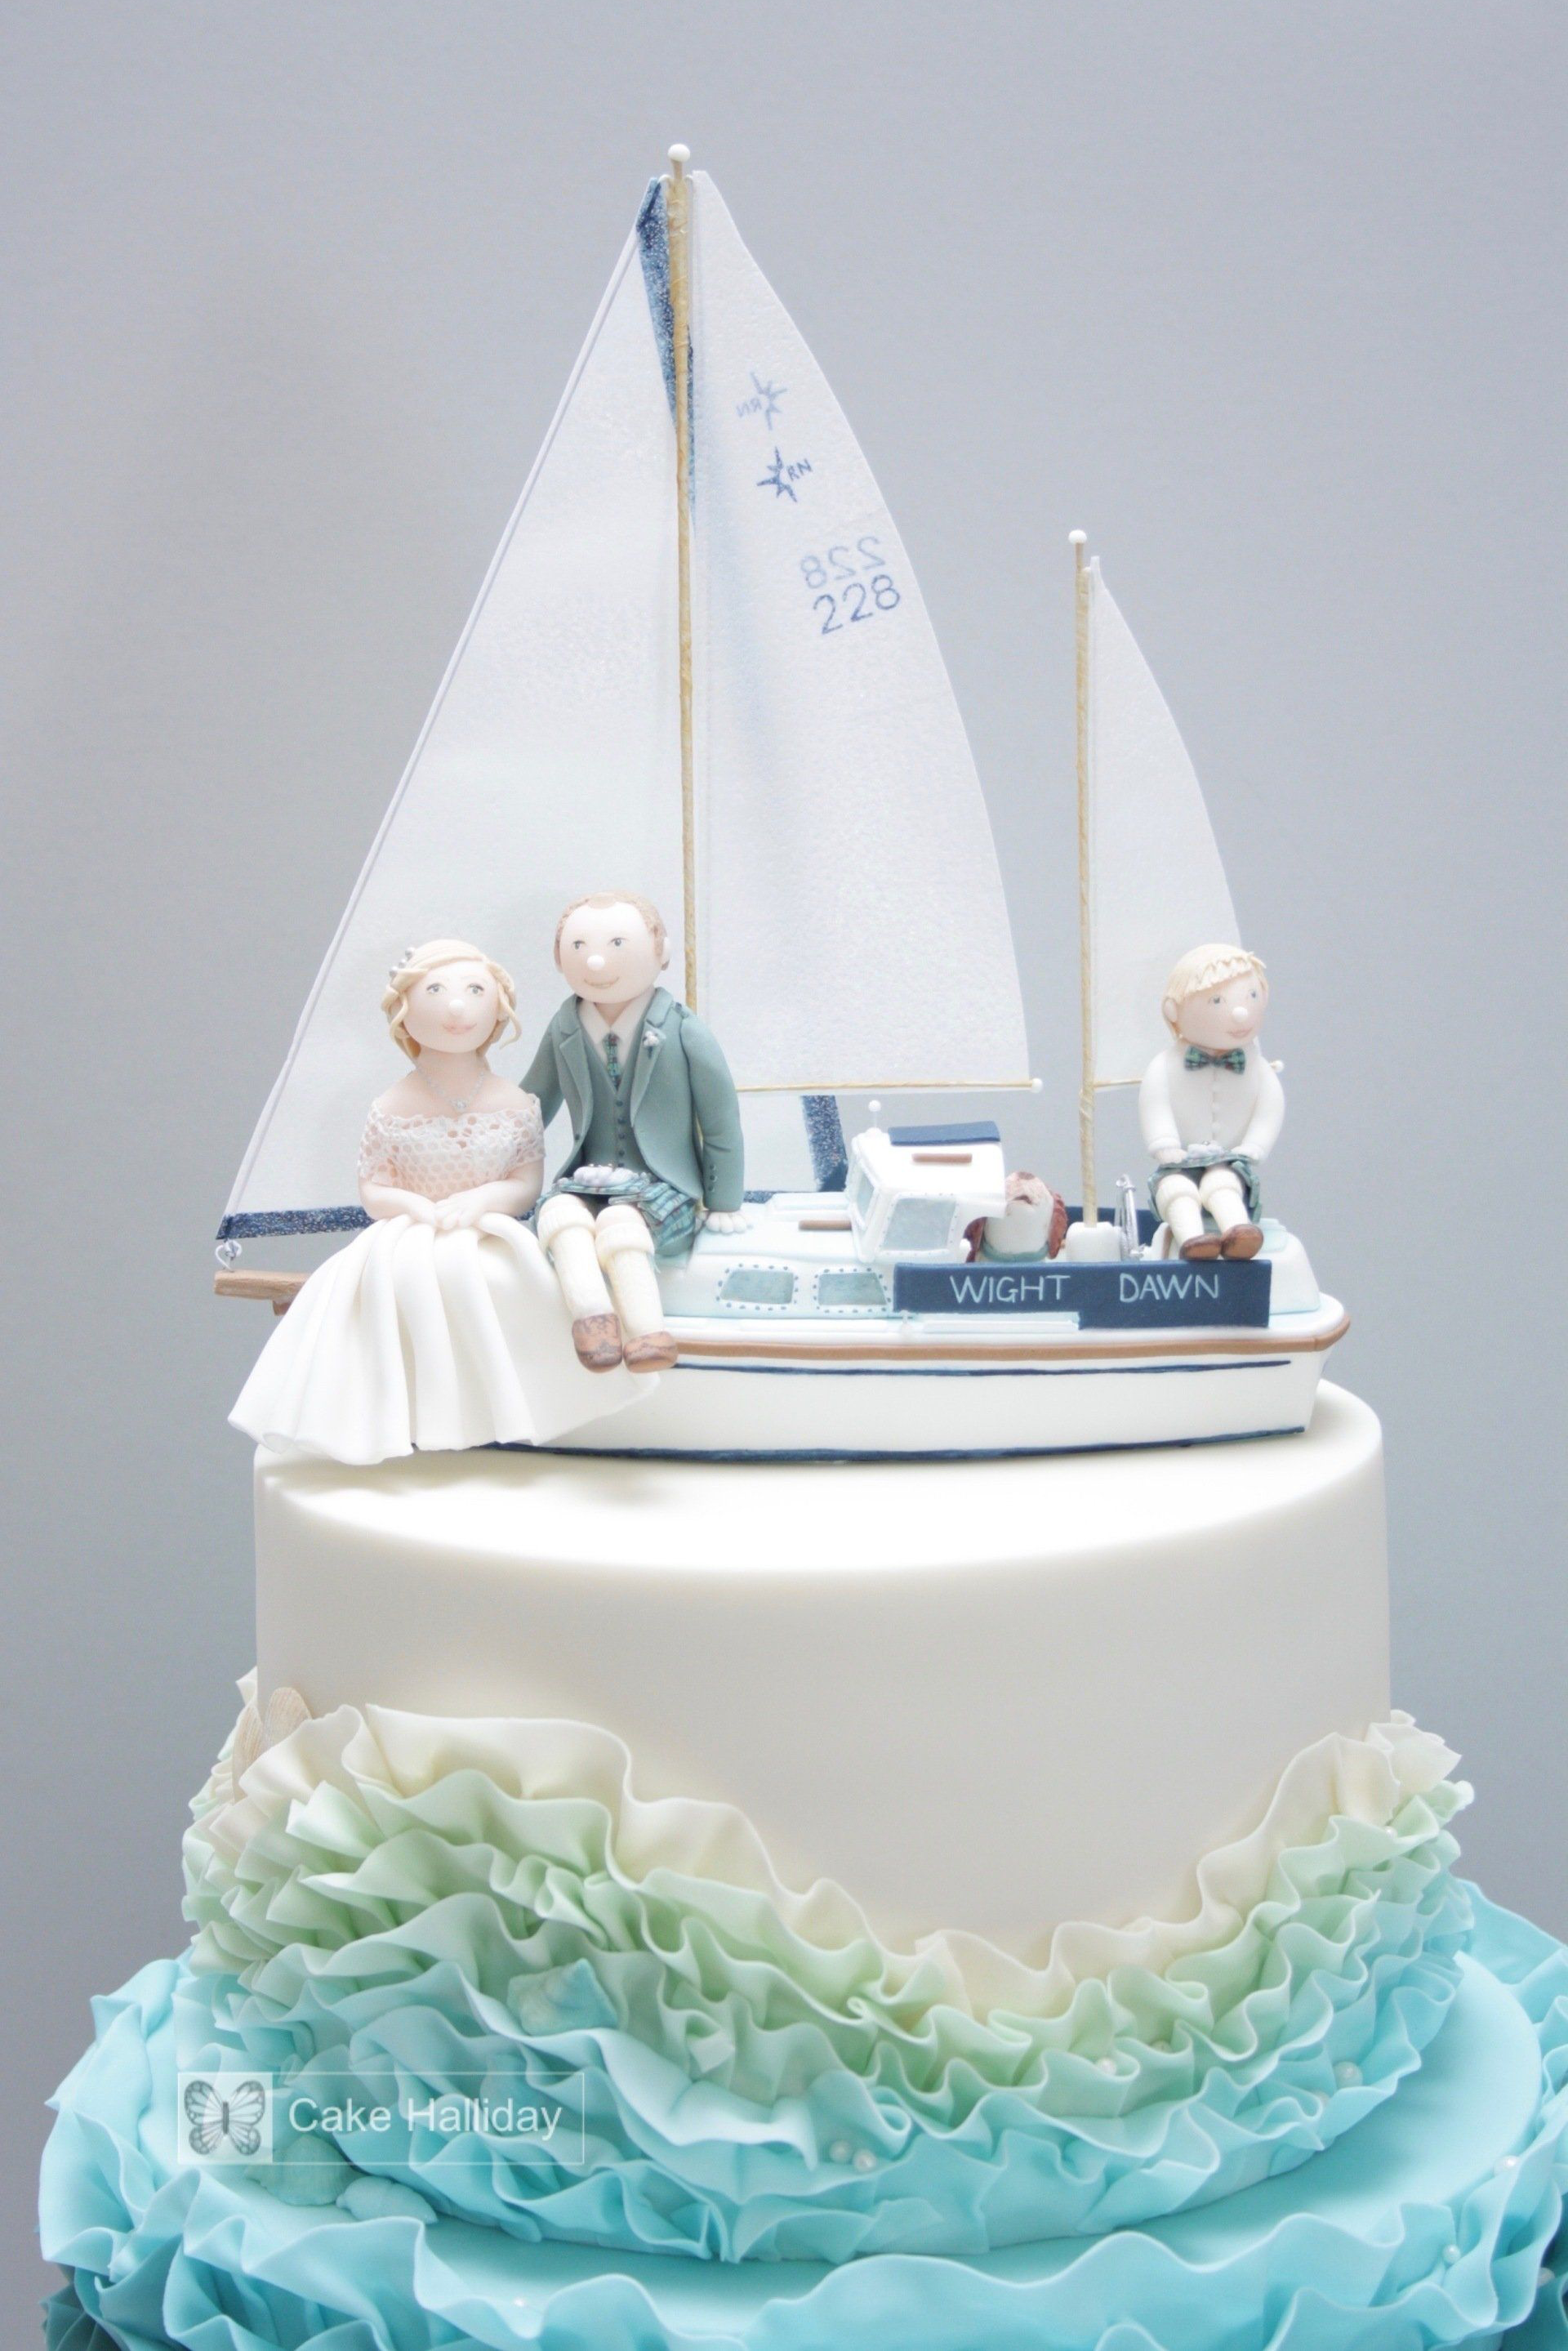 Wedding cake with blue ruffles, sugar boat & bride/groom figures, Ayrshire, Glasgow, Scotland